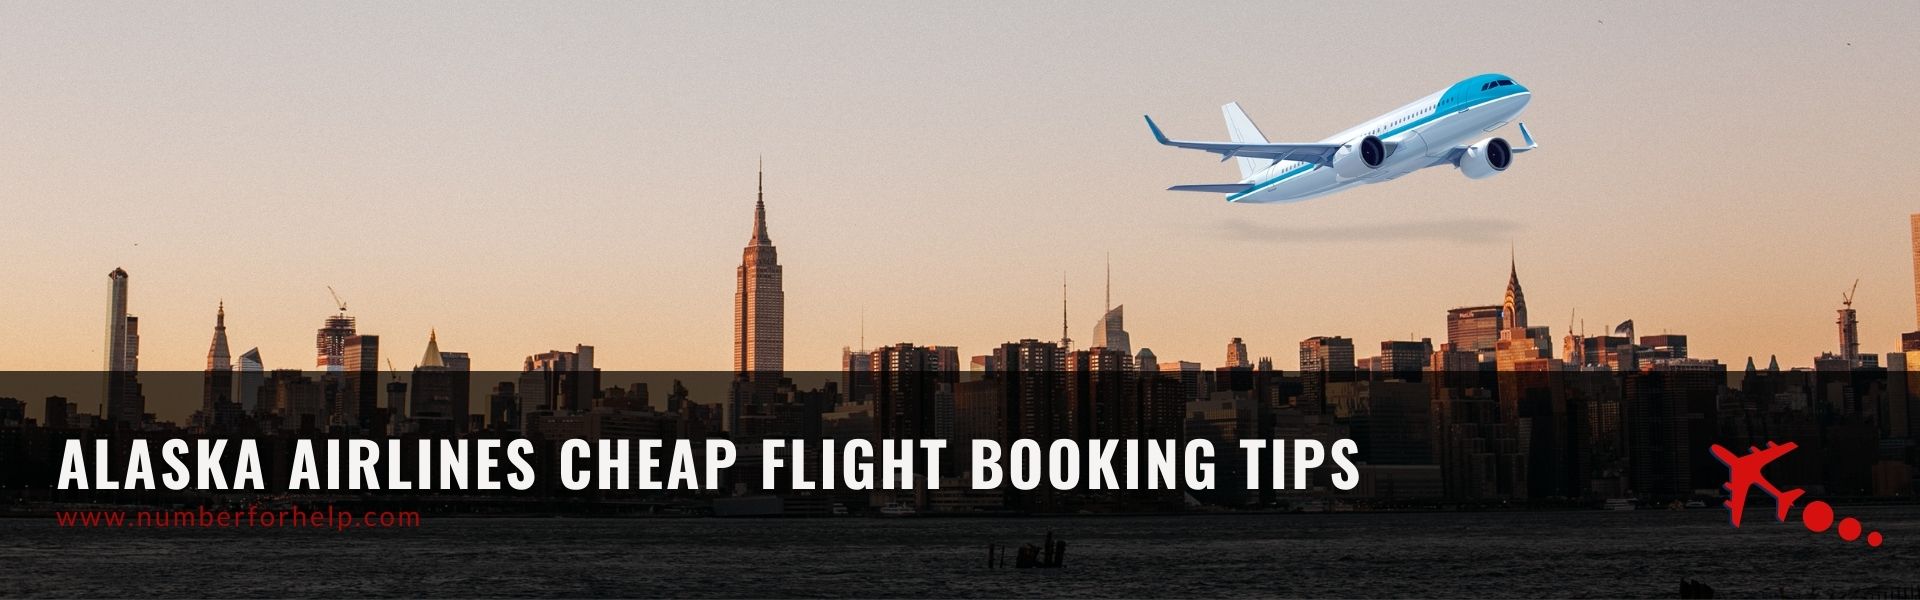 2020-09-22-09-59-10alaska airlines cheap flight tickets tips